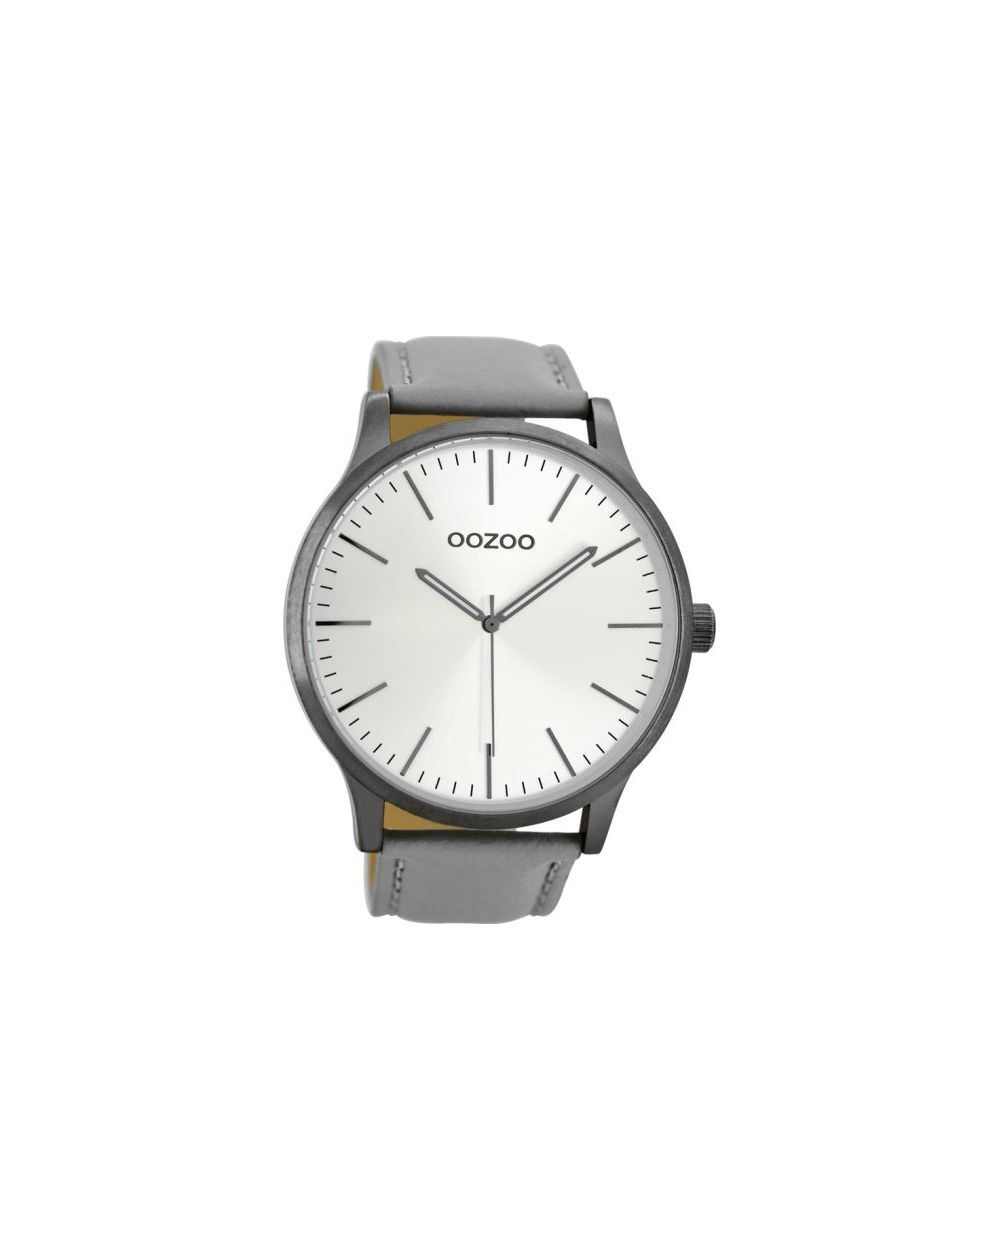 Oozoo montre/watch/horloge C8536